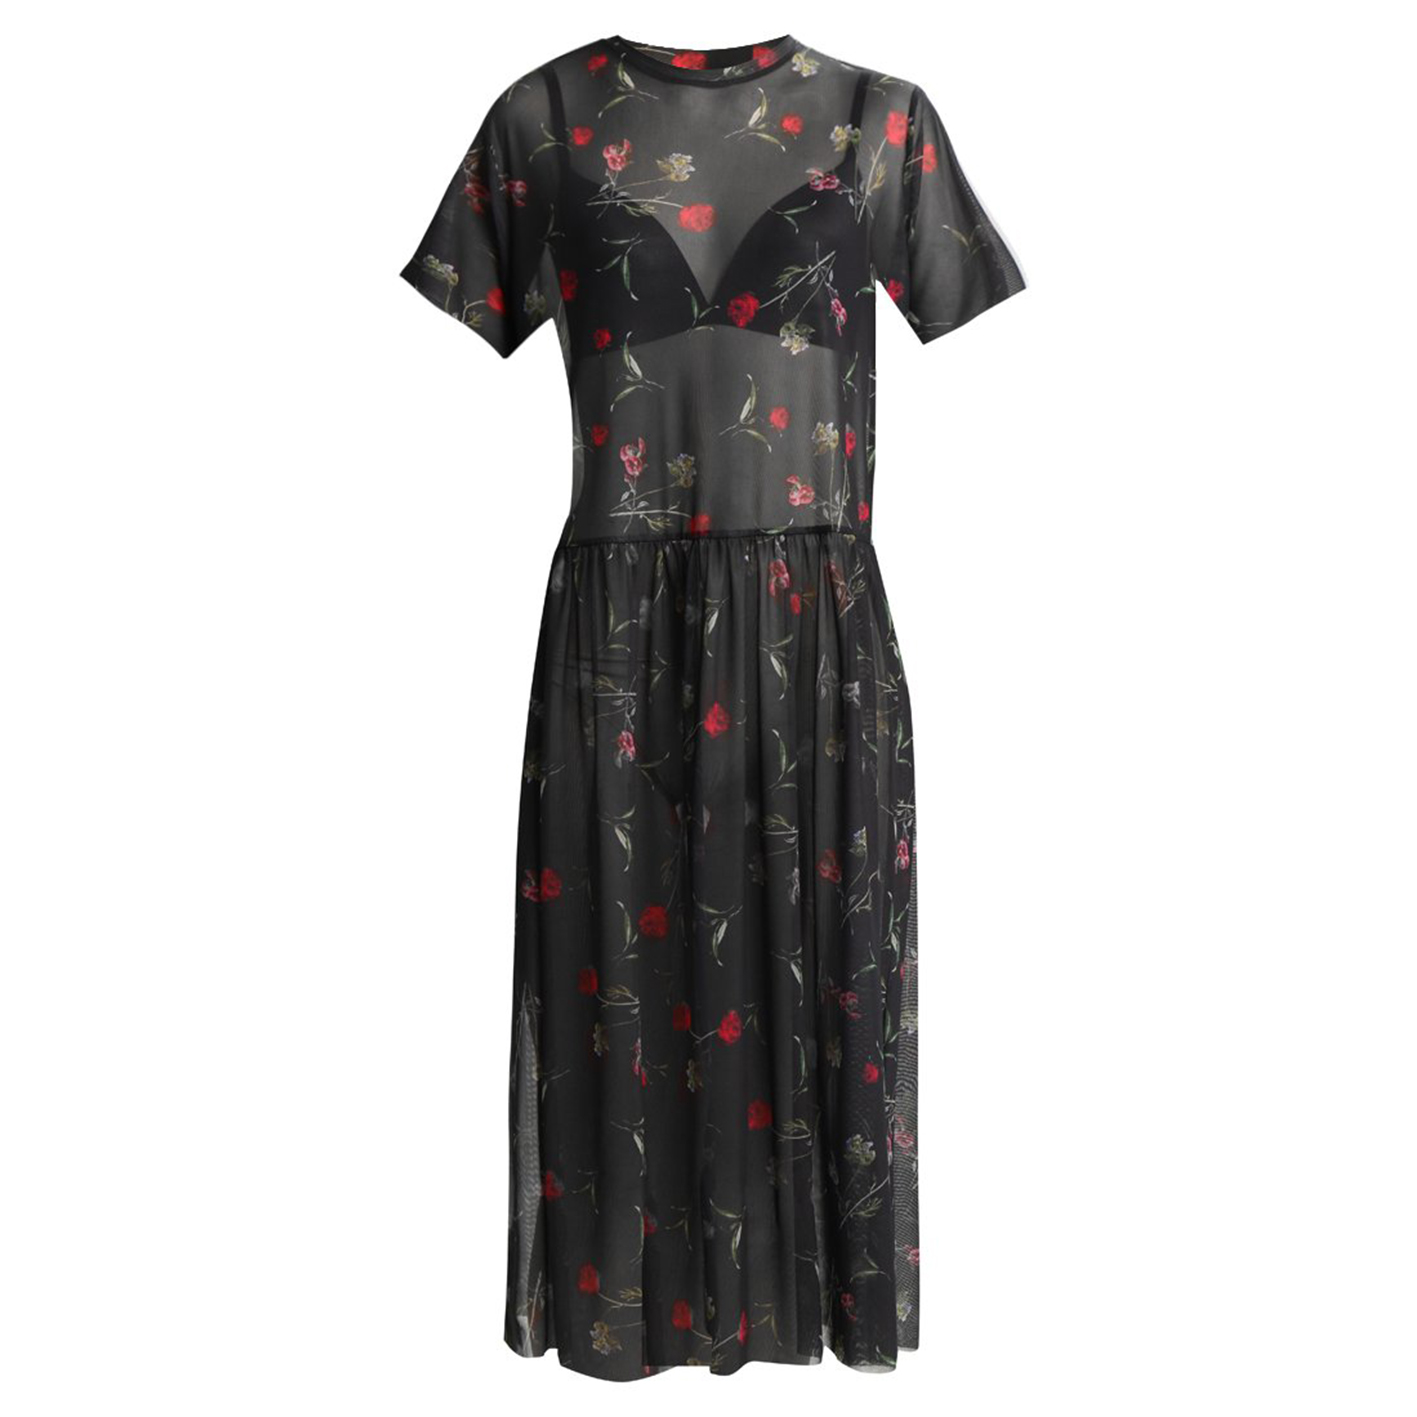 Floral Maxi Dress, £47.99, Zalando